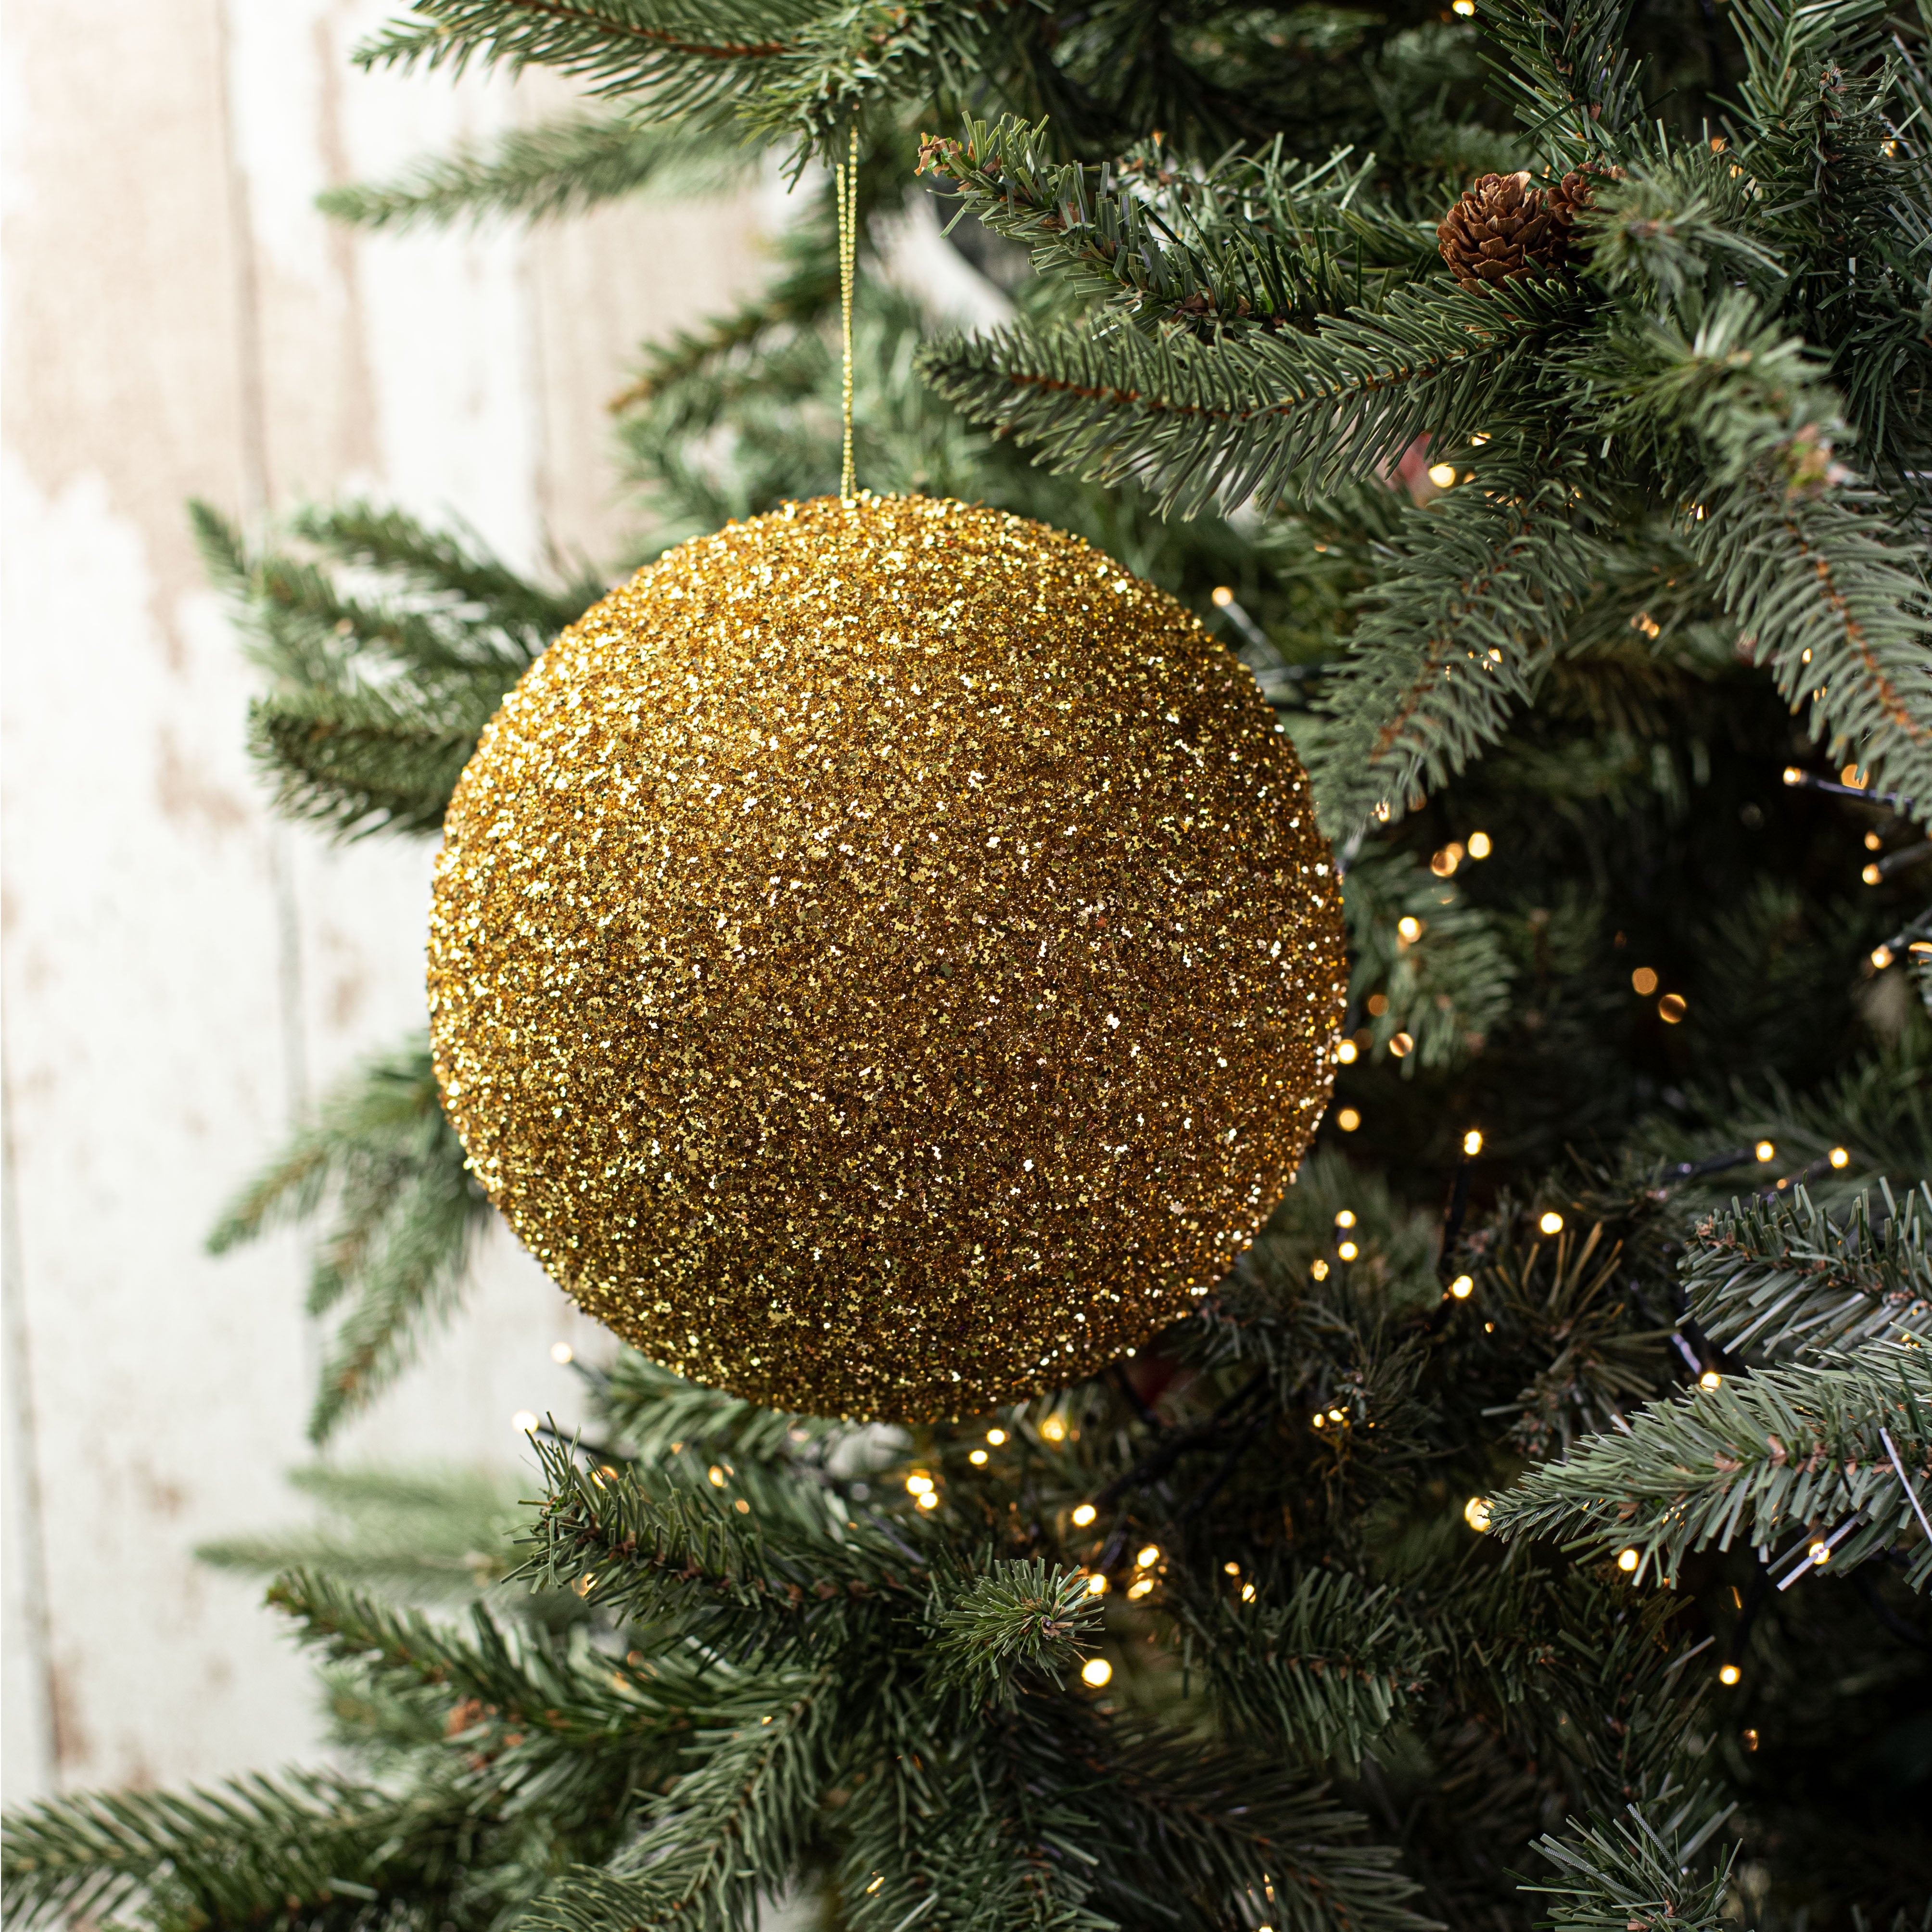 200MM Tinsel Glitter Ball Ornament: Gold